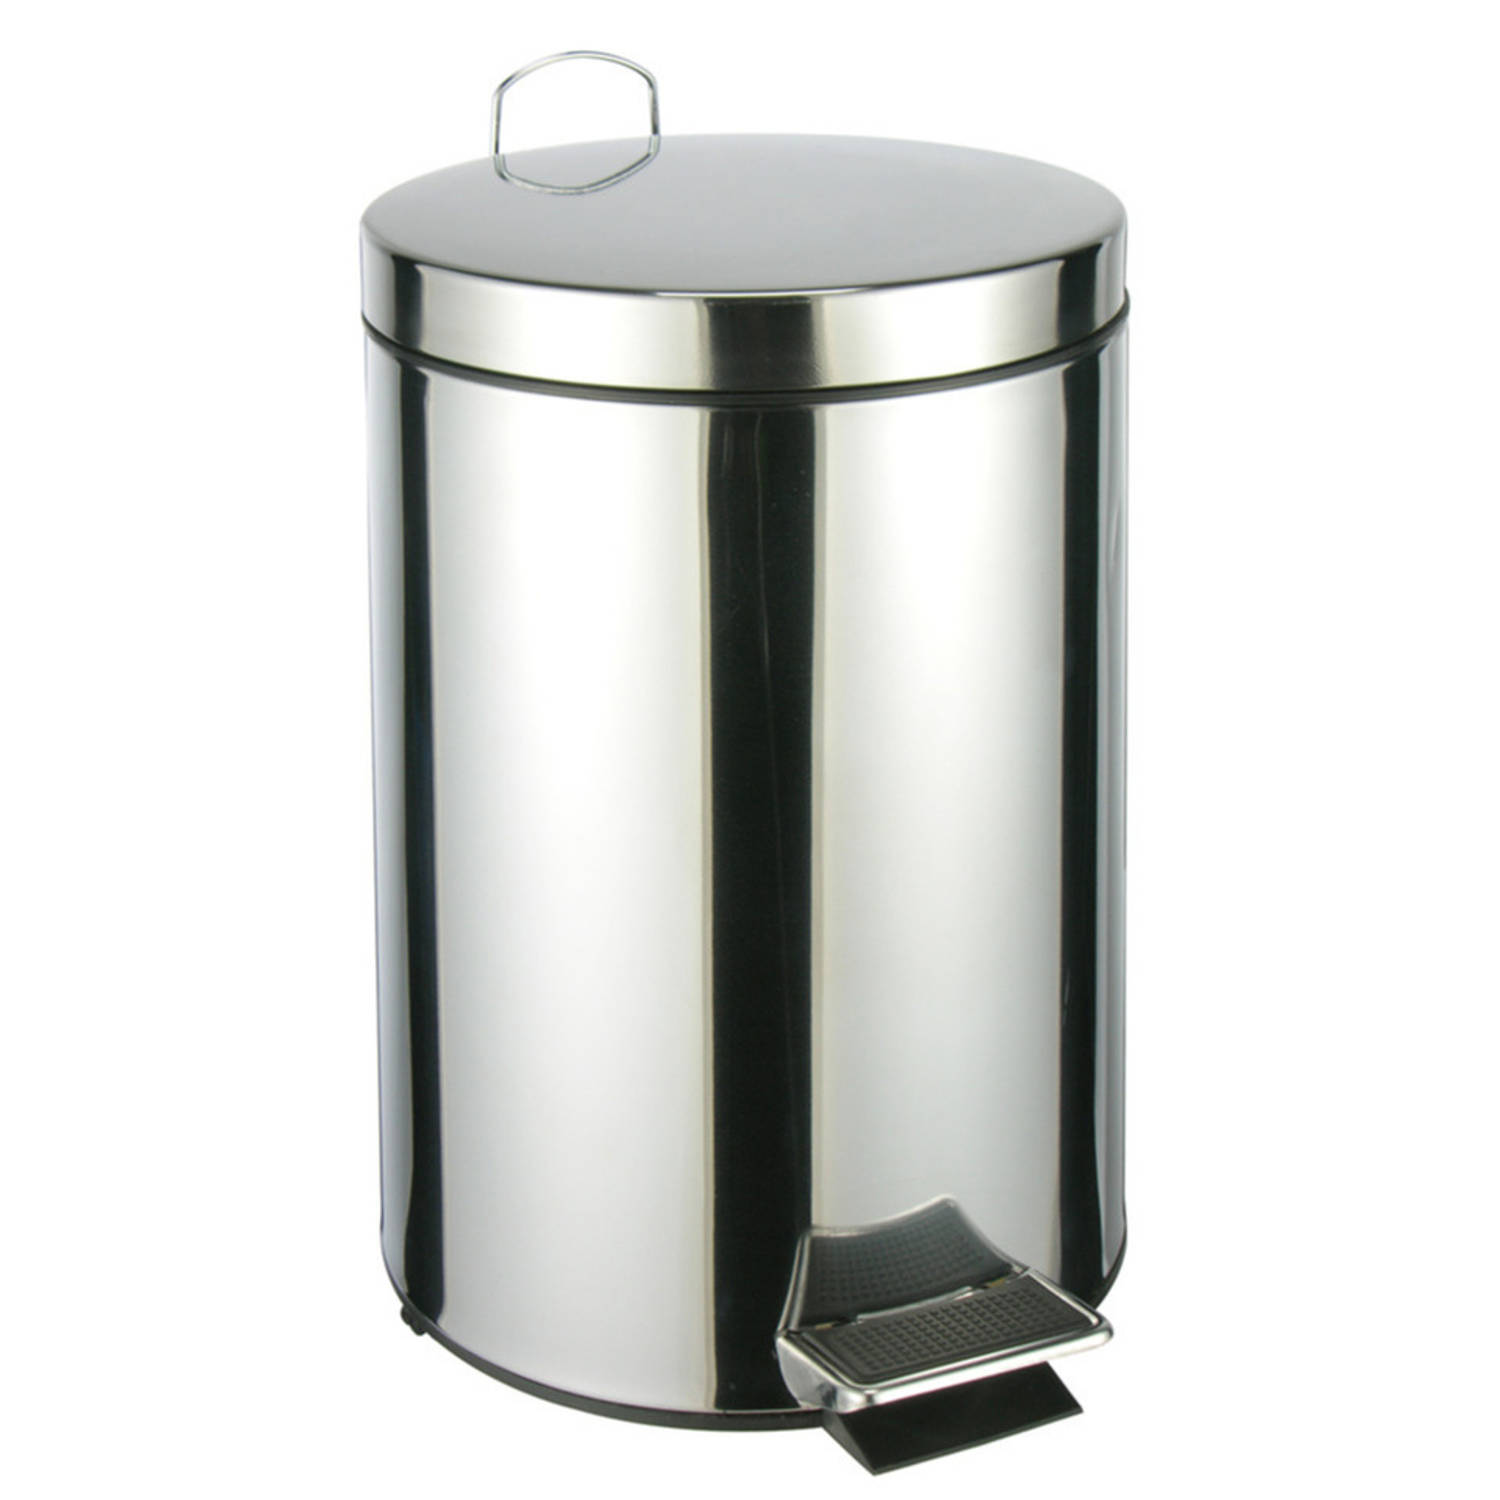 RVS pedaalemmer-vuilnisbak 40 cm 12 liter Afvalemmers badkamer-toilet-keuken